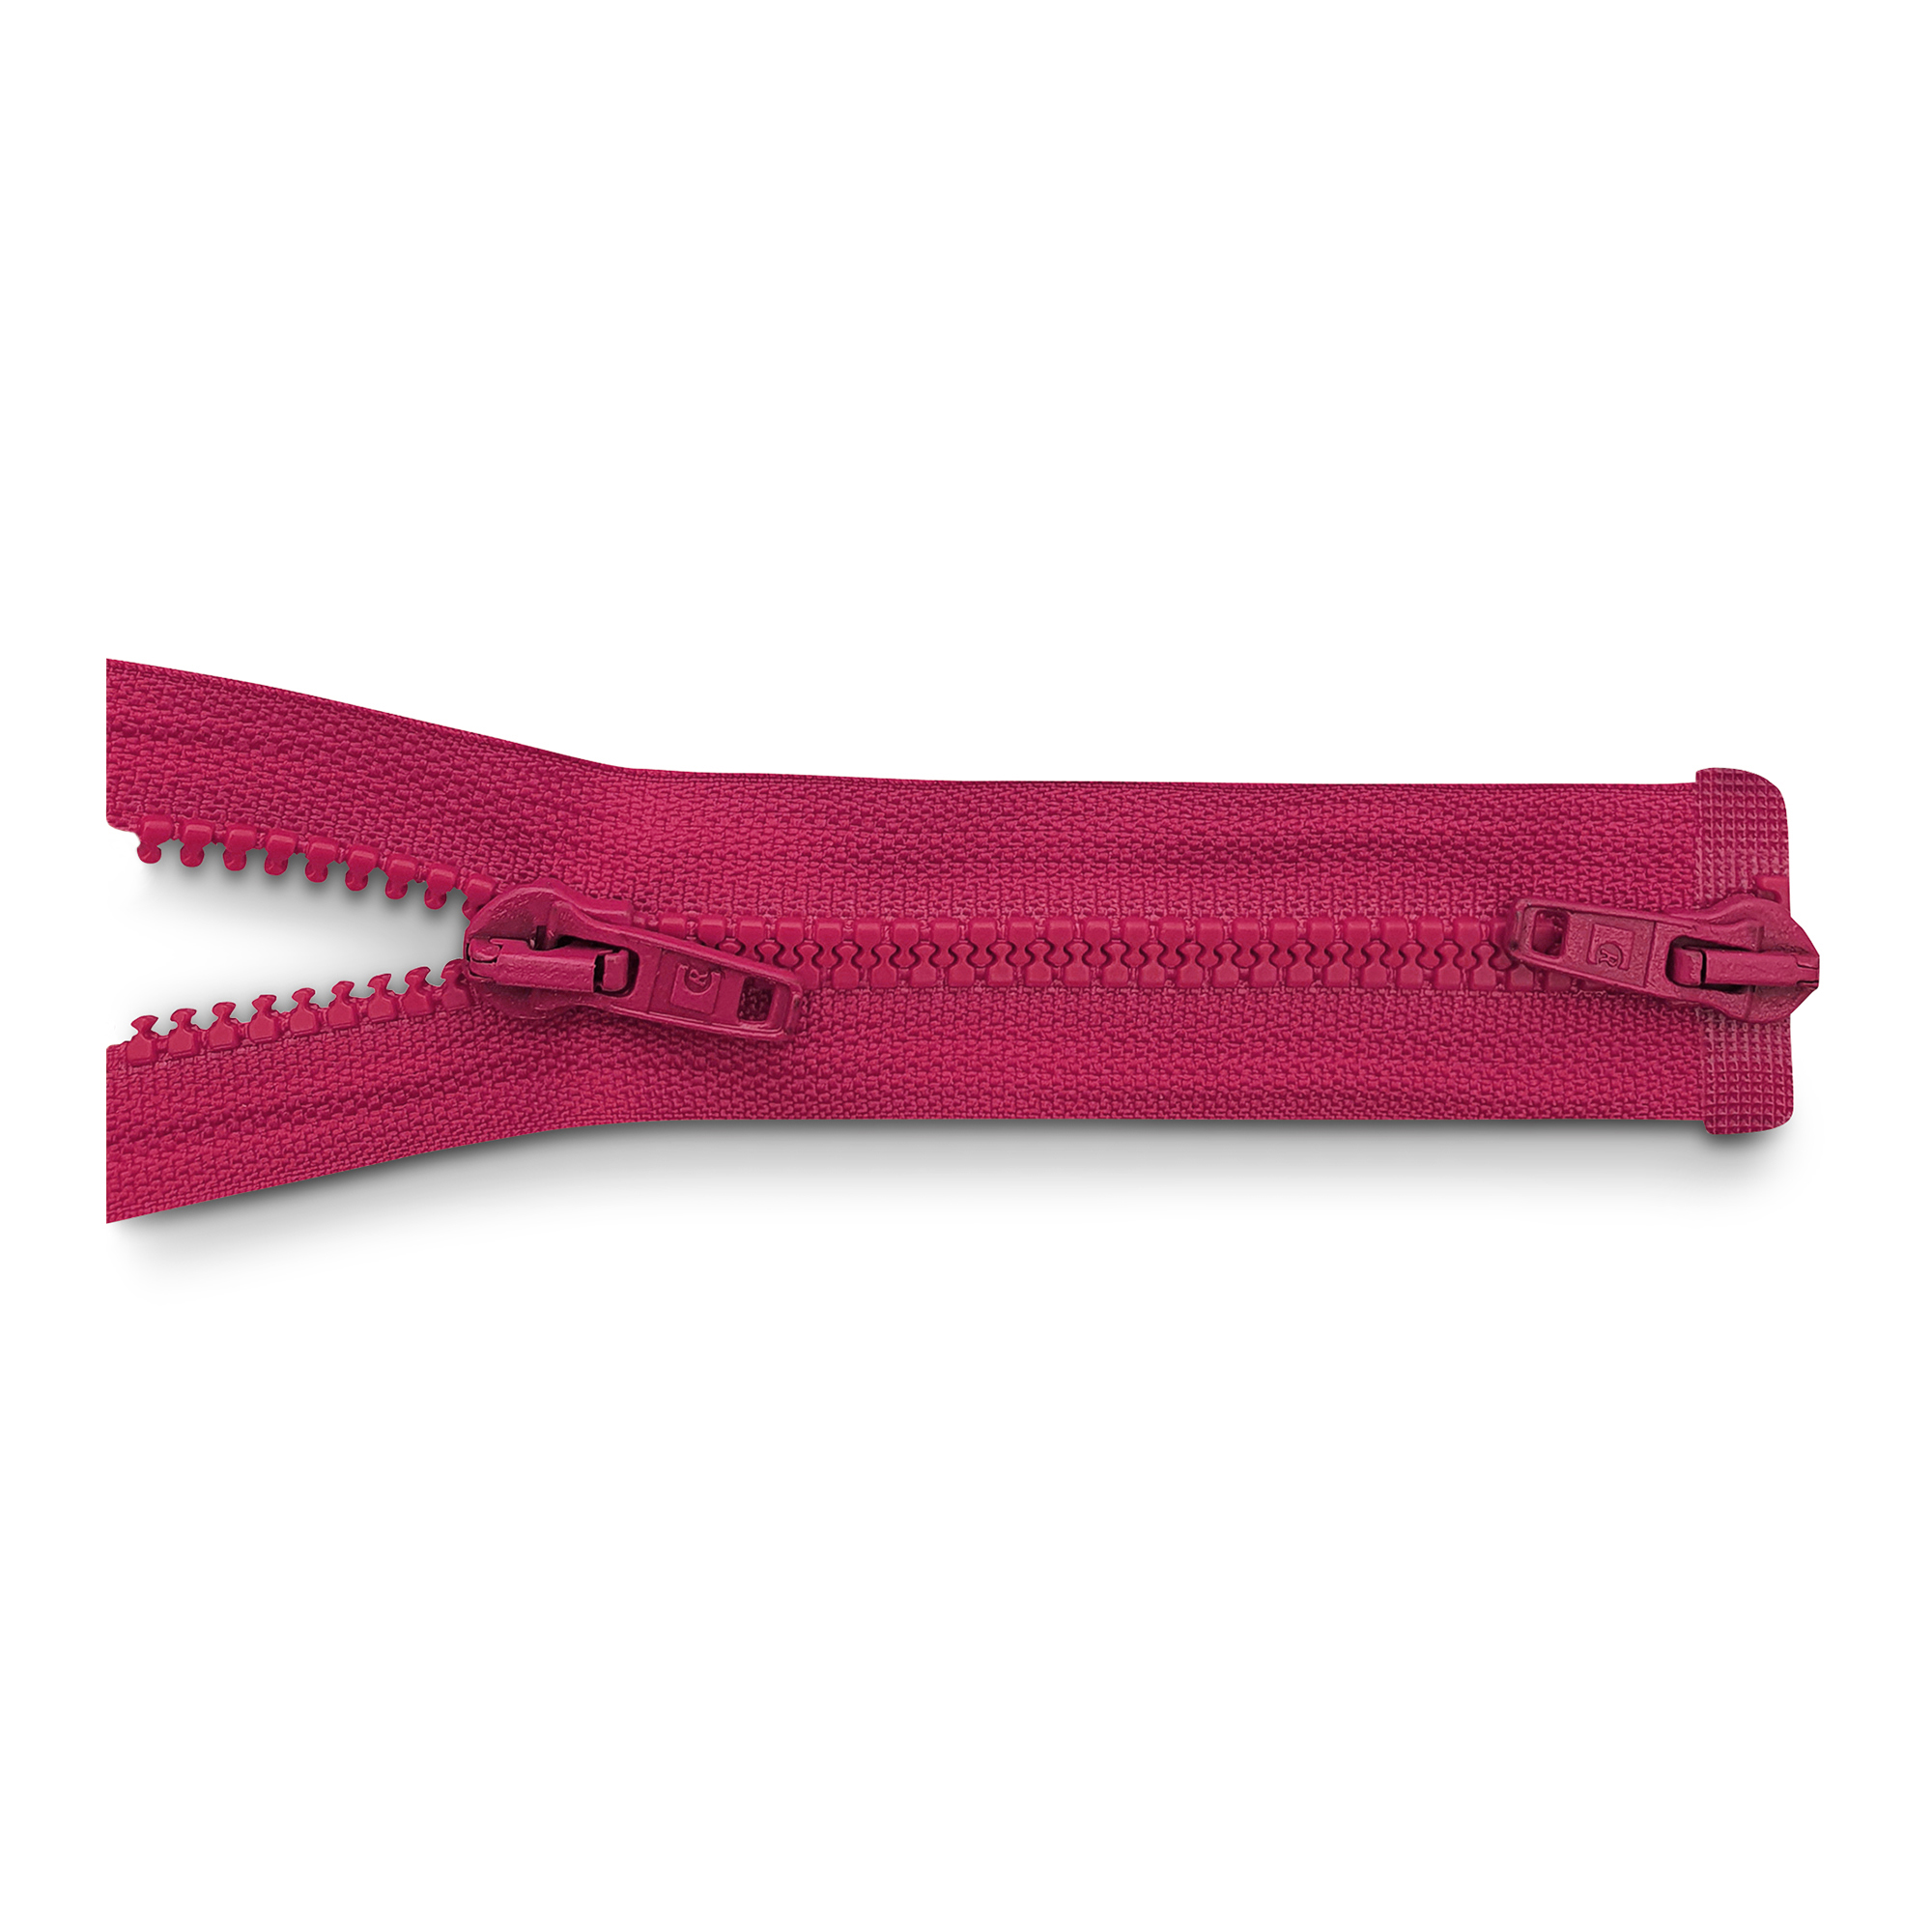 Reißverschluss 100cm, 2-Wege, K.stoff Zähne breit, pink, hochwertiger Marken-Reißverschluss von Rubi/Barcelona